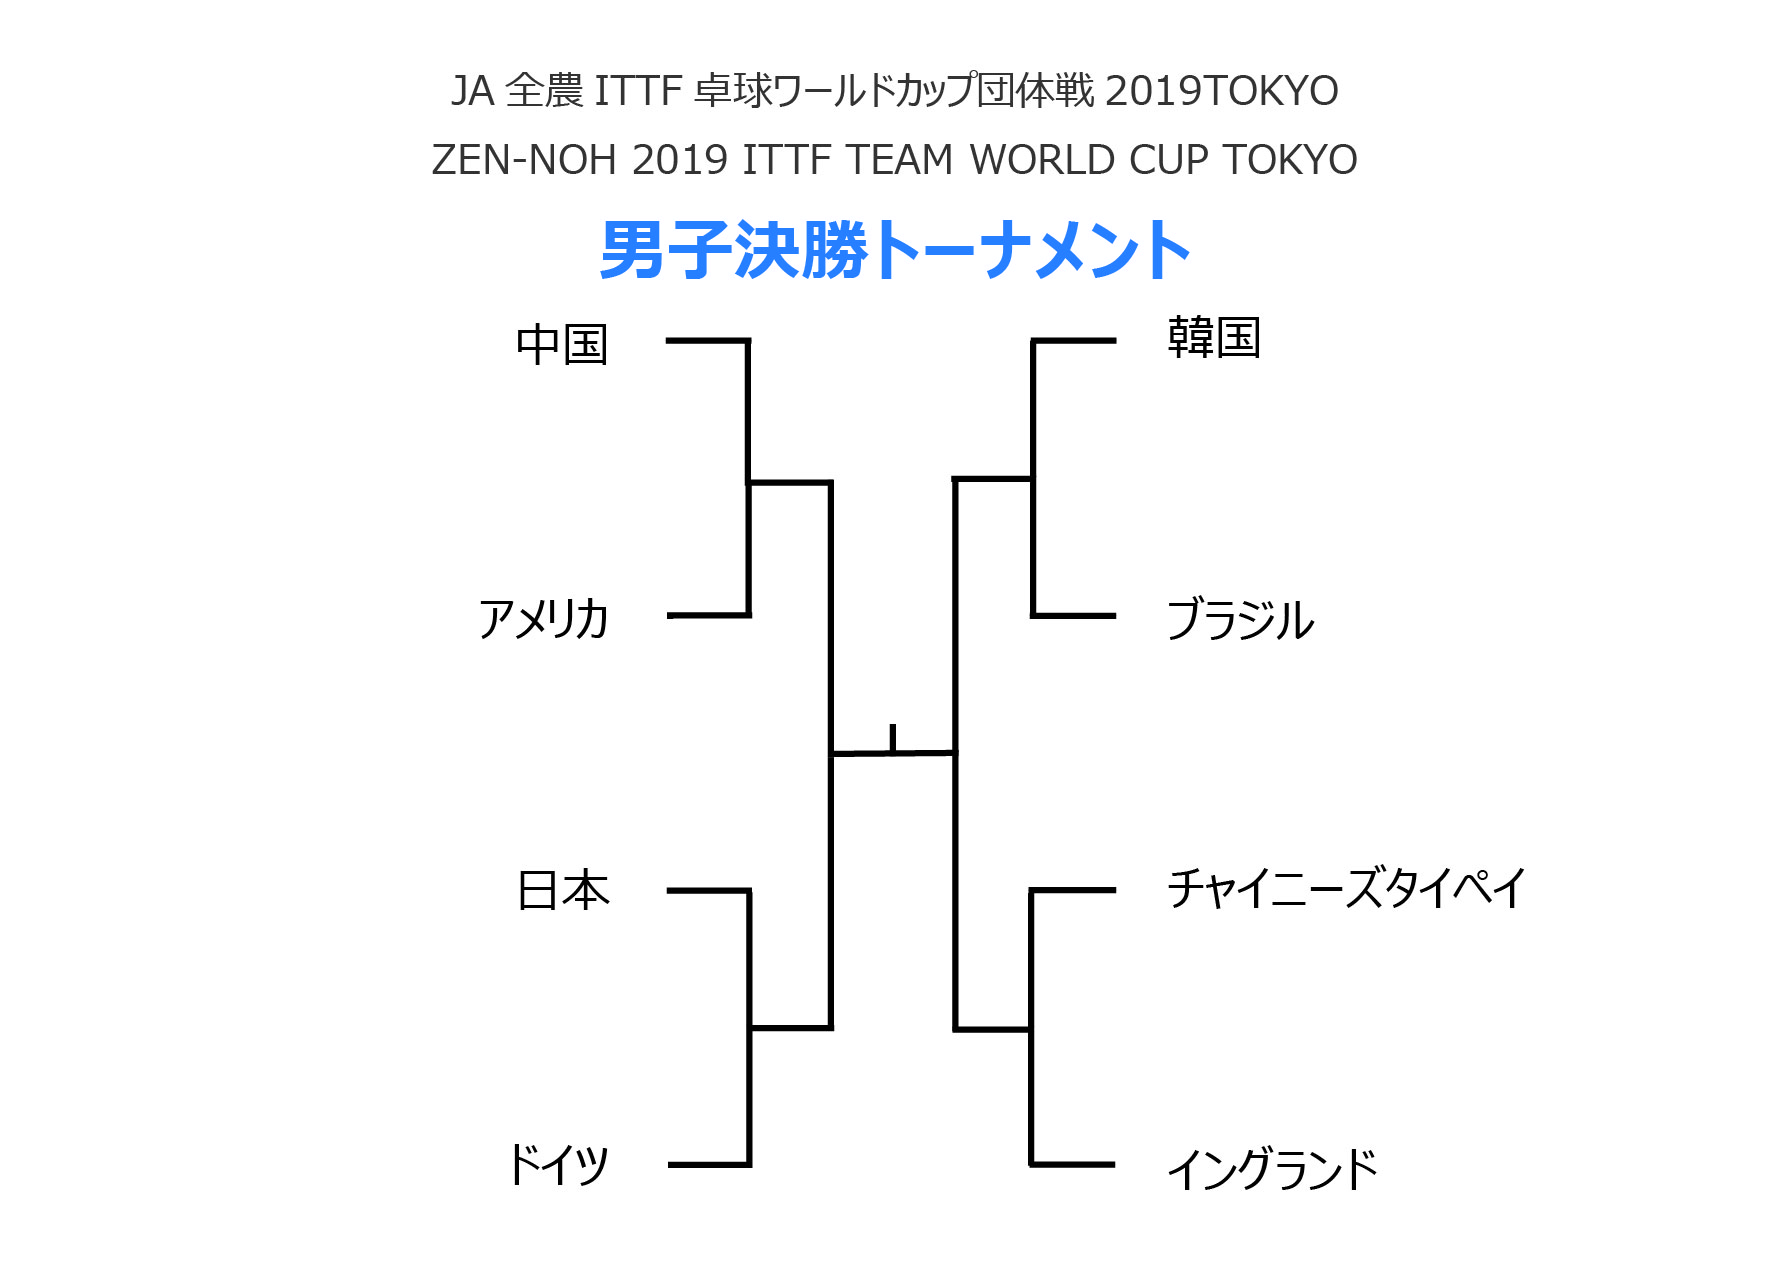 男子準々決勝の組み合わせが決定 日本はドイツと対戦 トピックス ニッタクニュース Nittaku ニッタク 公式サイト 卓球の総合メーカー日本卓球